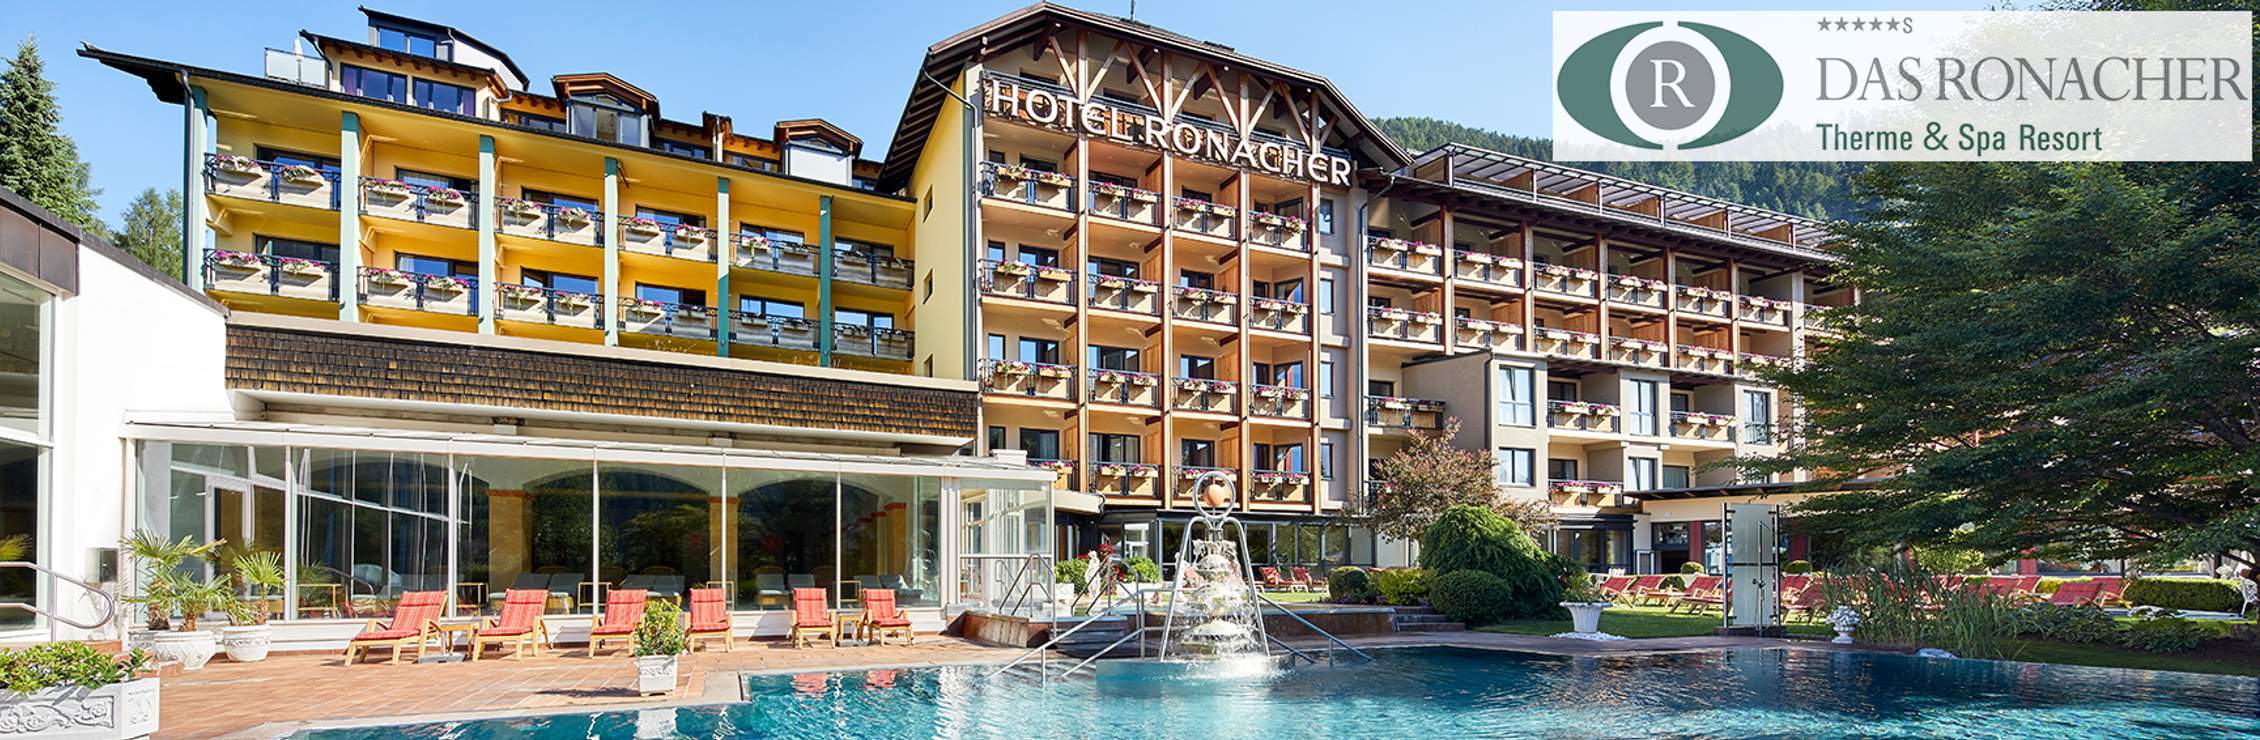 DAS RONACHER*****S Therme & Spa Resort in Österreich